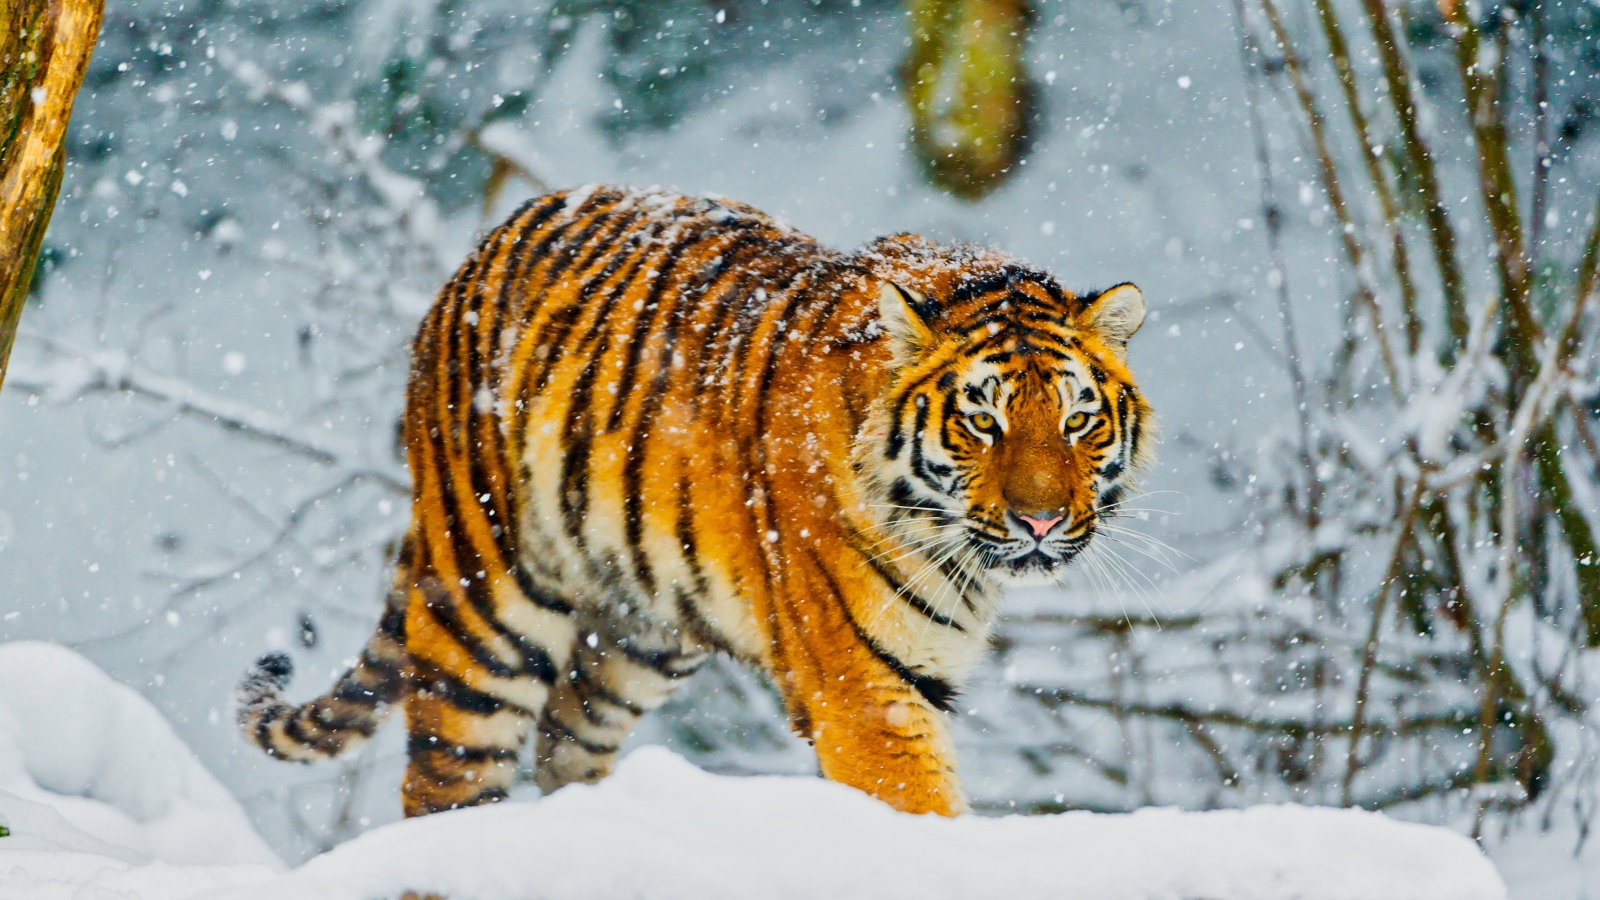 Big Amur tiger walks through a snowy forest